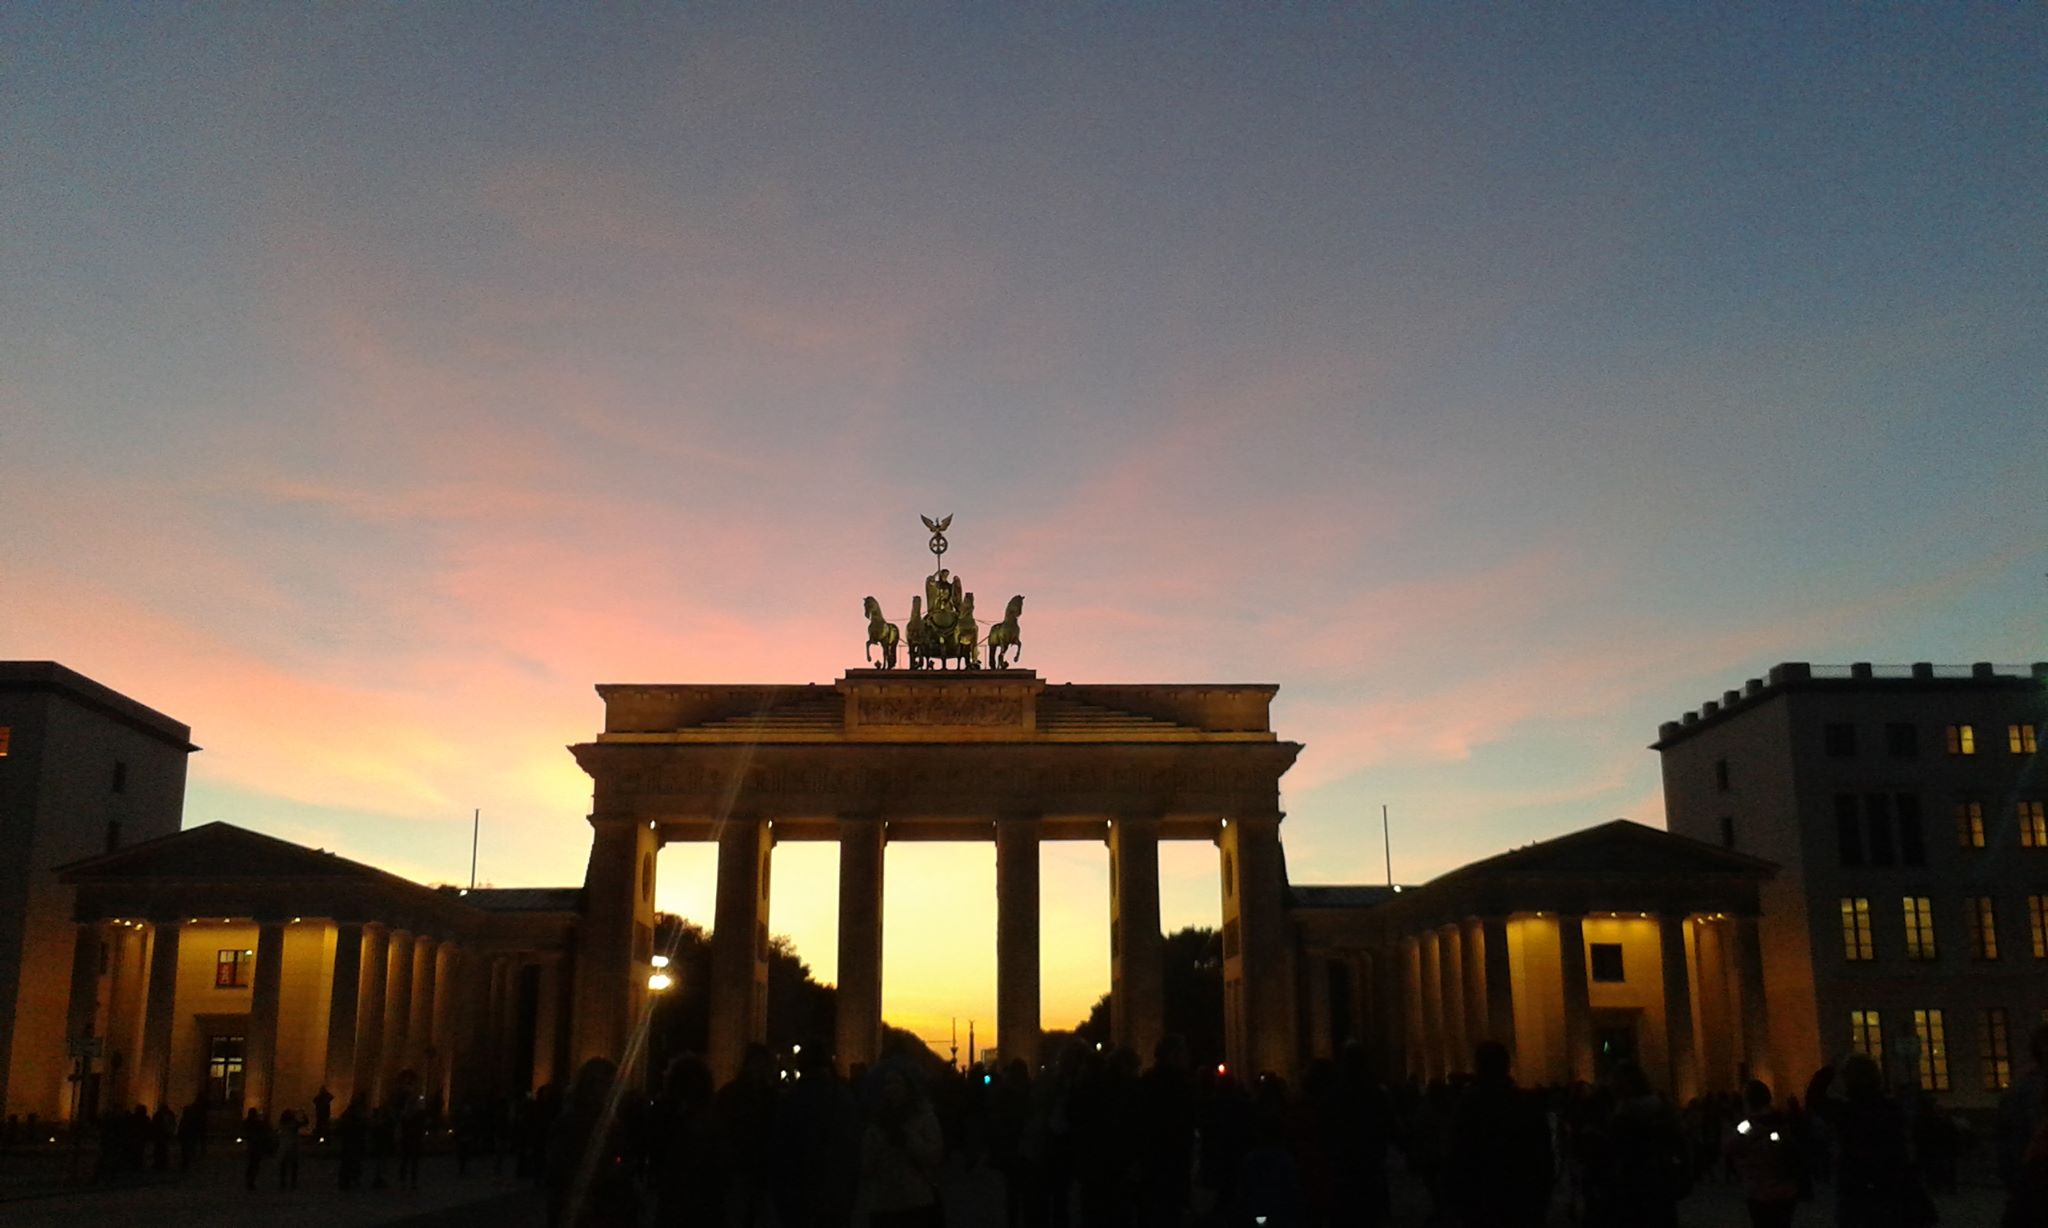 La puerta de Brandeburgo: viajar barato a Berlín 